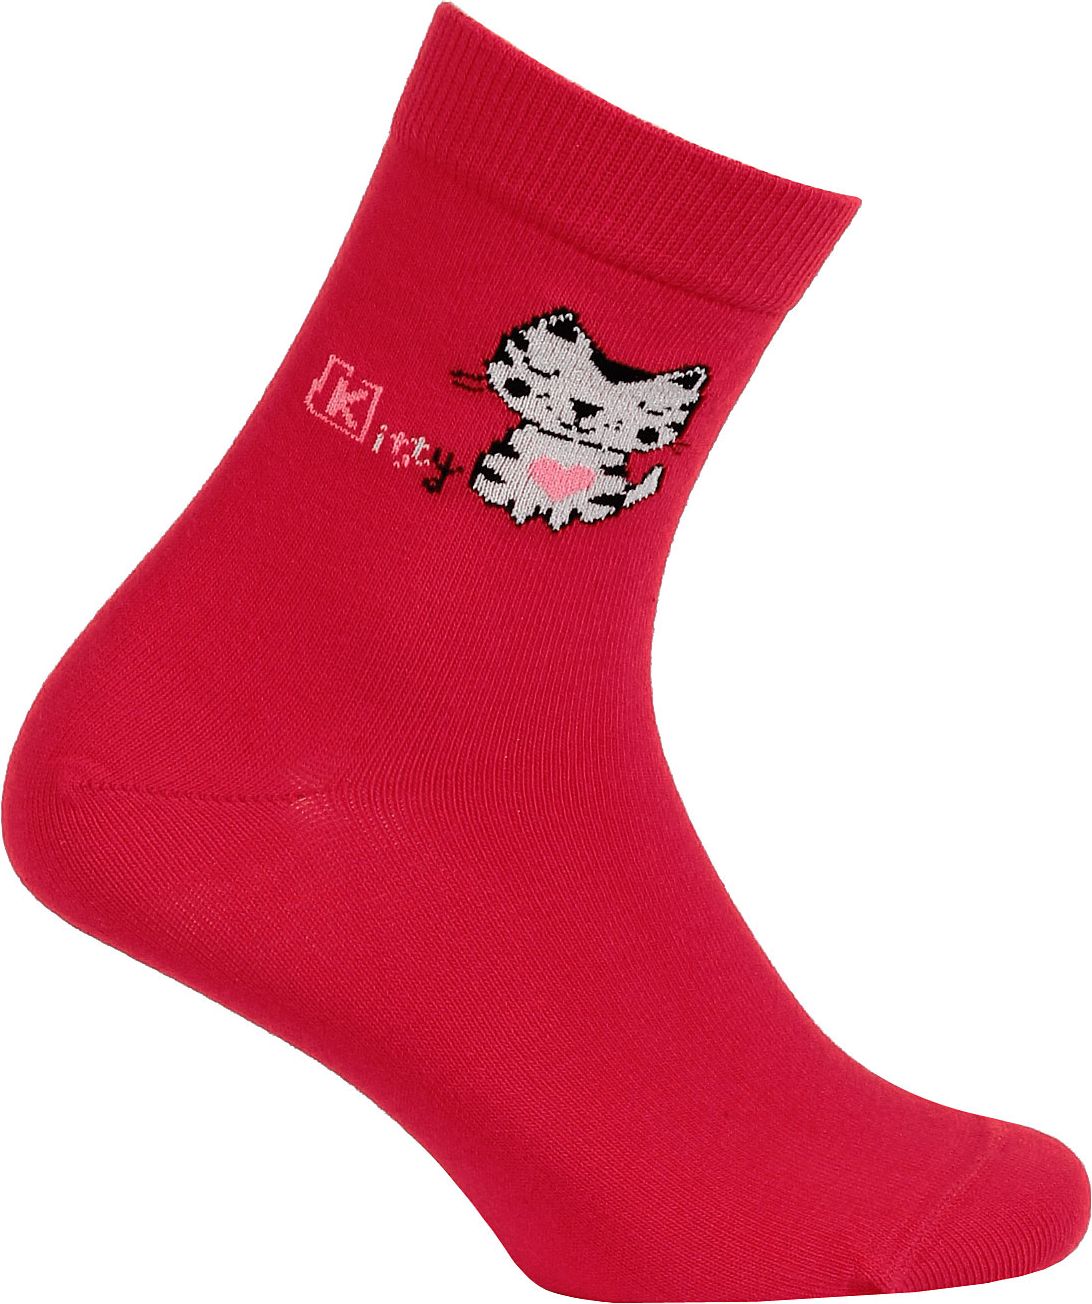 Dívčí vzorované ponožky WOLA KOČIČKA KITTY červené Velikost: 27-29 - obrázek 1